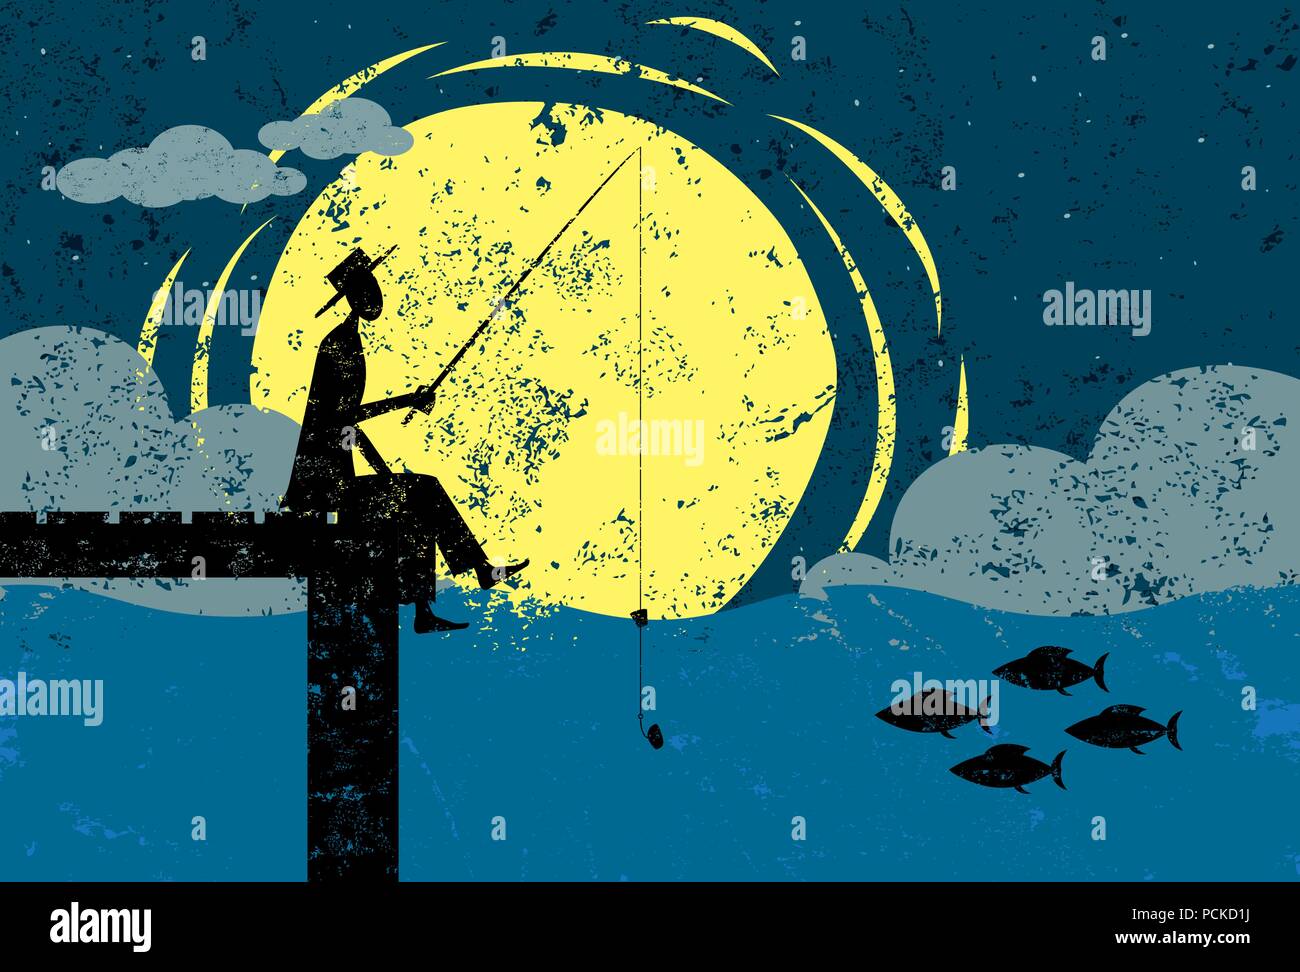 Angeln auf einem Dock im Mondschein einen Mann angeln am Ende eines Docks im Mondlicht. Der Mann, Dock und Fisch sind auf einem separaten Layer aus dem Hintergrund Stock Vektor